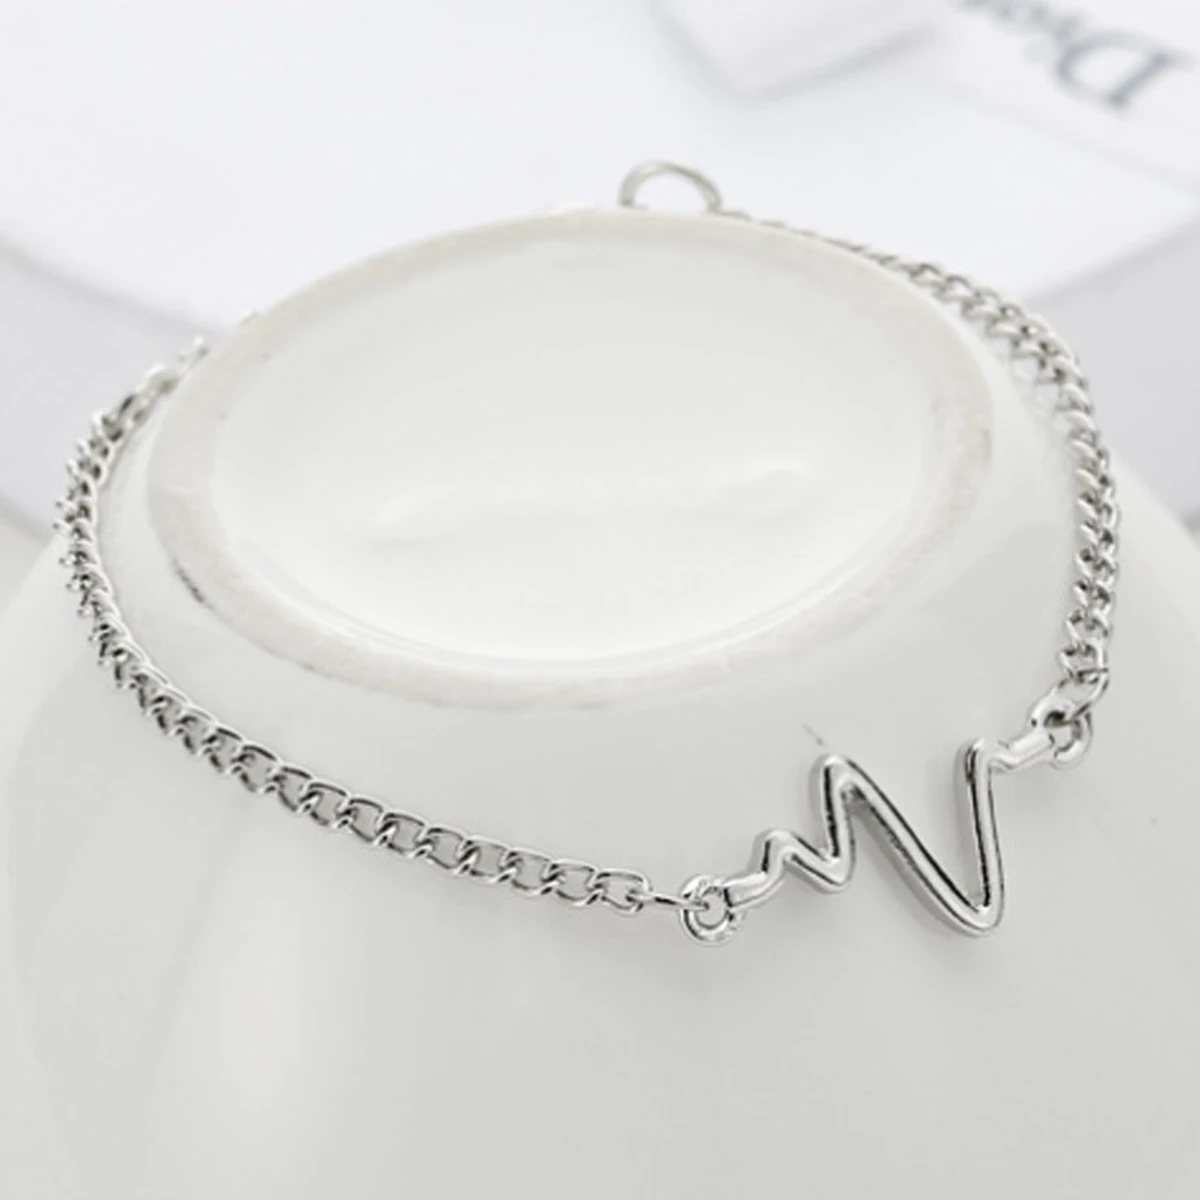 New Heart Shape Designed Bracelet for Women Trendy and Fashionable Bracelet